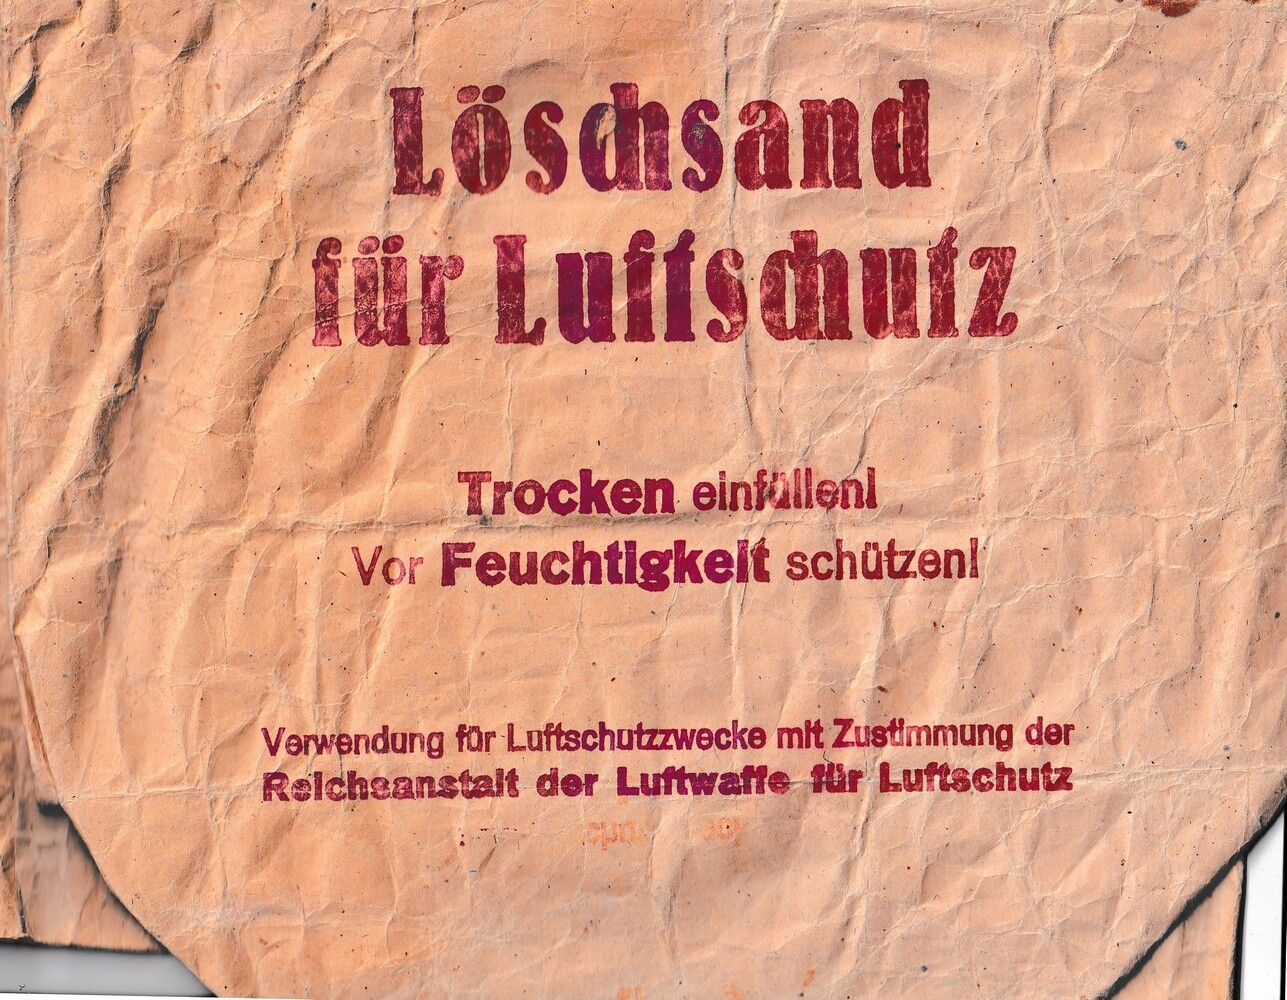 Papier Sack für Löschsand (Kulturverein Guntersblum CC BY-NC-SA)